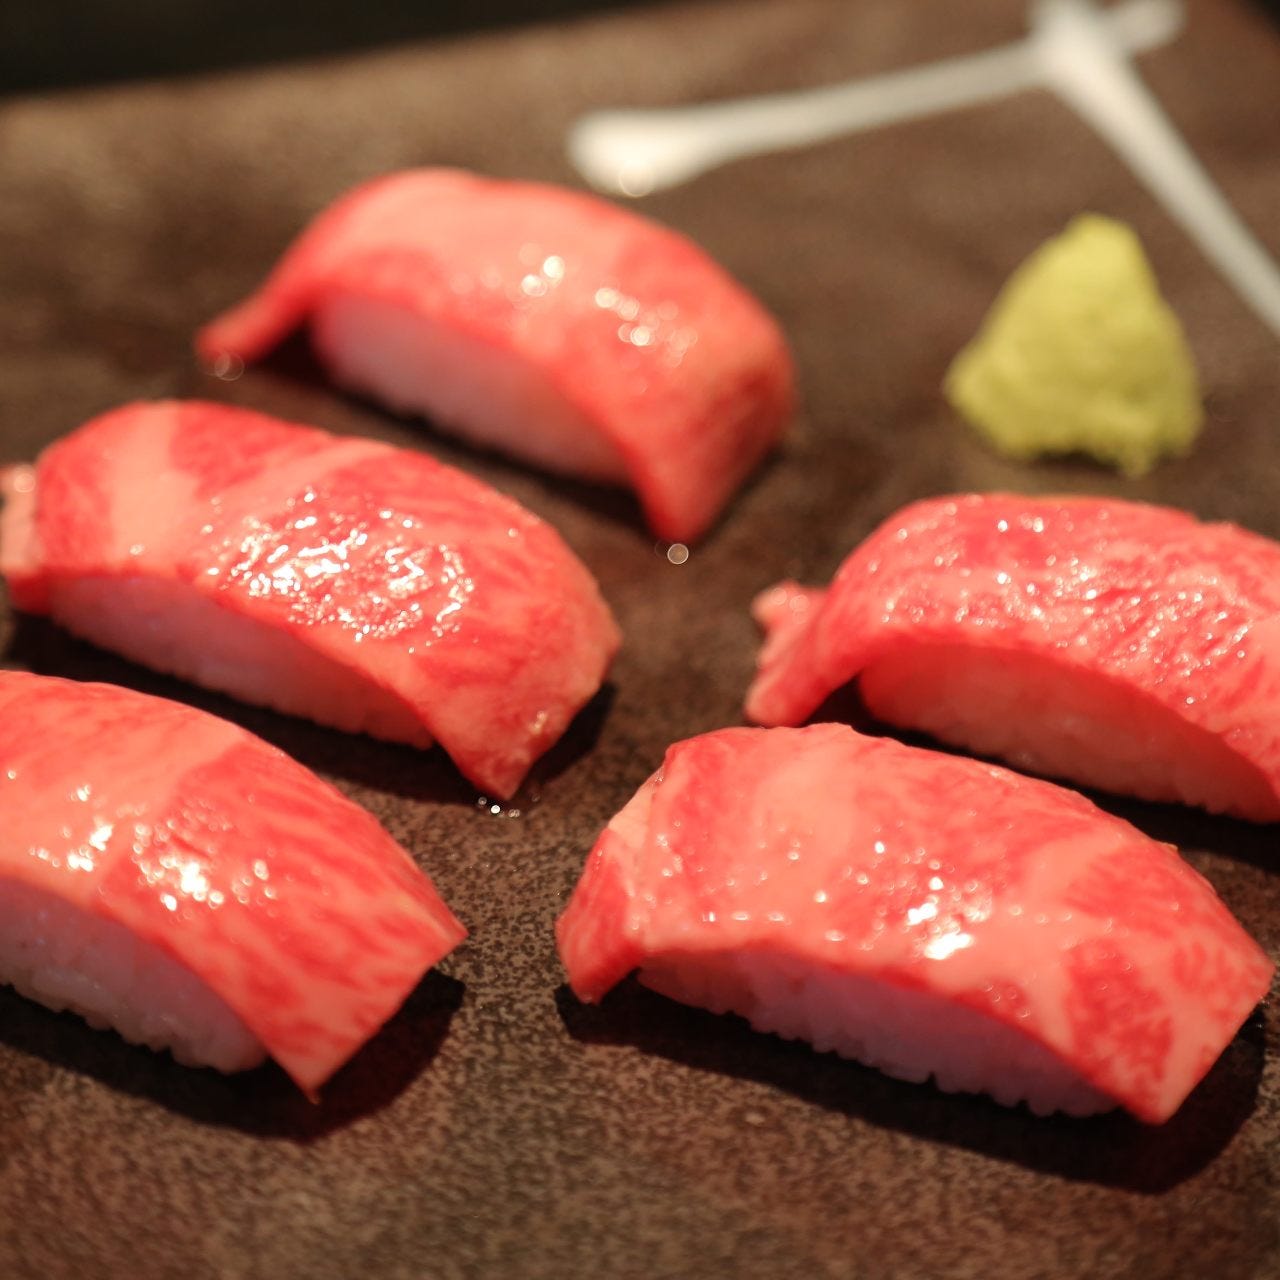 21年 最新グルメ 恵比寿にある美味しい肉寿司が味わえるお店 レストラン カフェ 居酒屋のネット予約 東京版